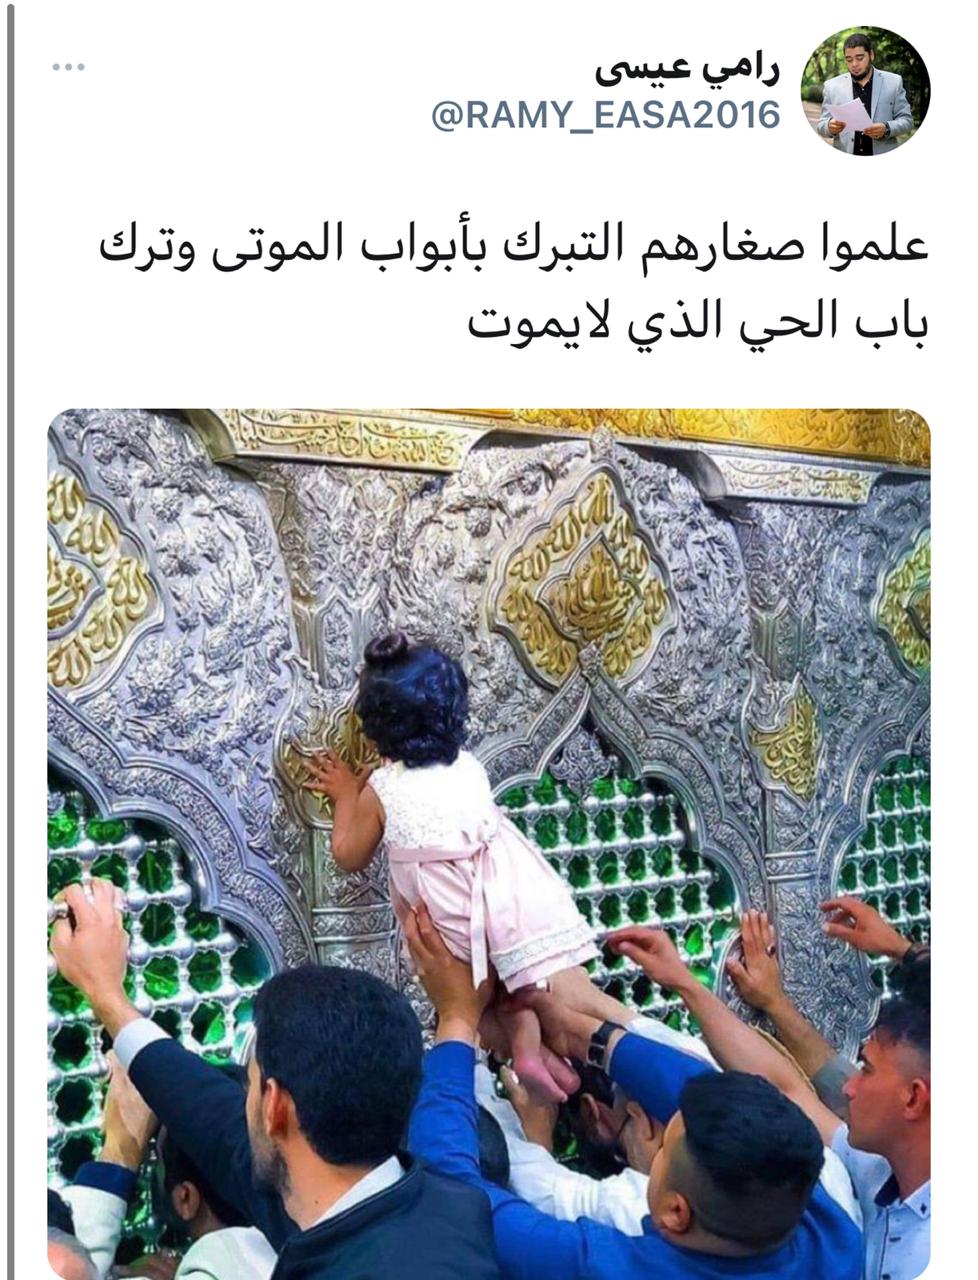 منتقدًا دين الشيعة.. رامي عيسى يكتب: علموا صغارهم التبرك بالموتى!